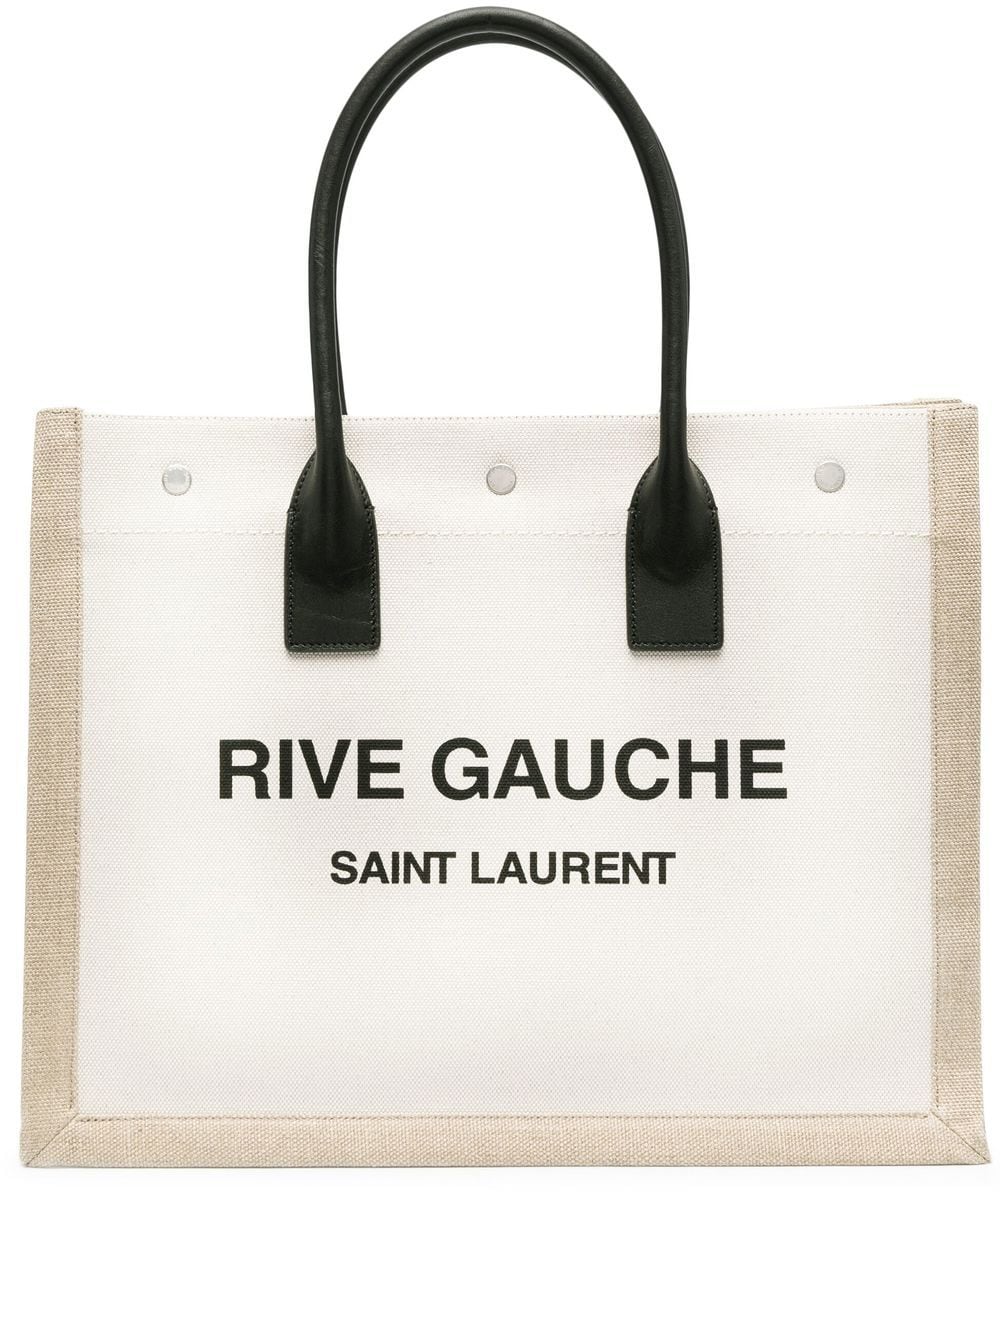 SAINT LAURENT PARIS RIVE GAUCHE TOTE BAG